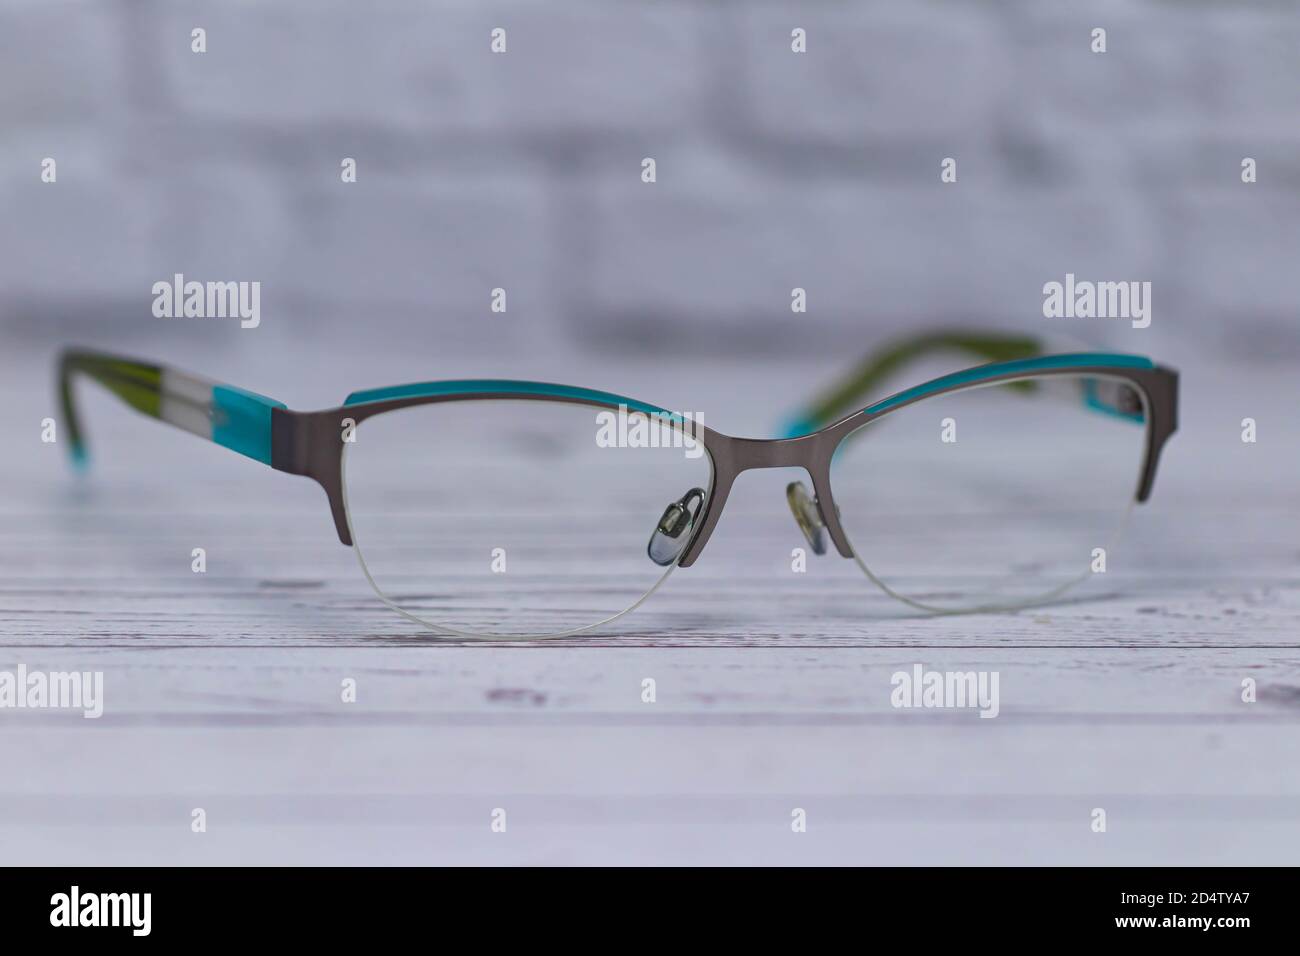 Gafas elegantes con lentes transparentes sobre una madera clara superficie Fotografía de stock Alamy